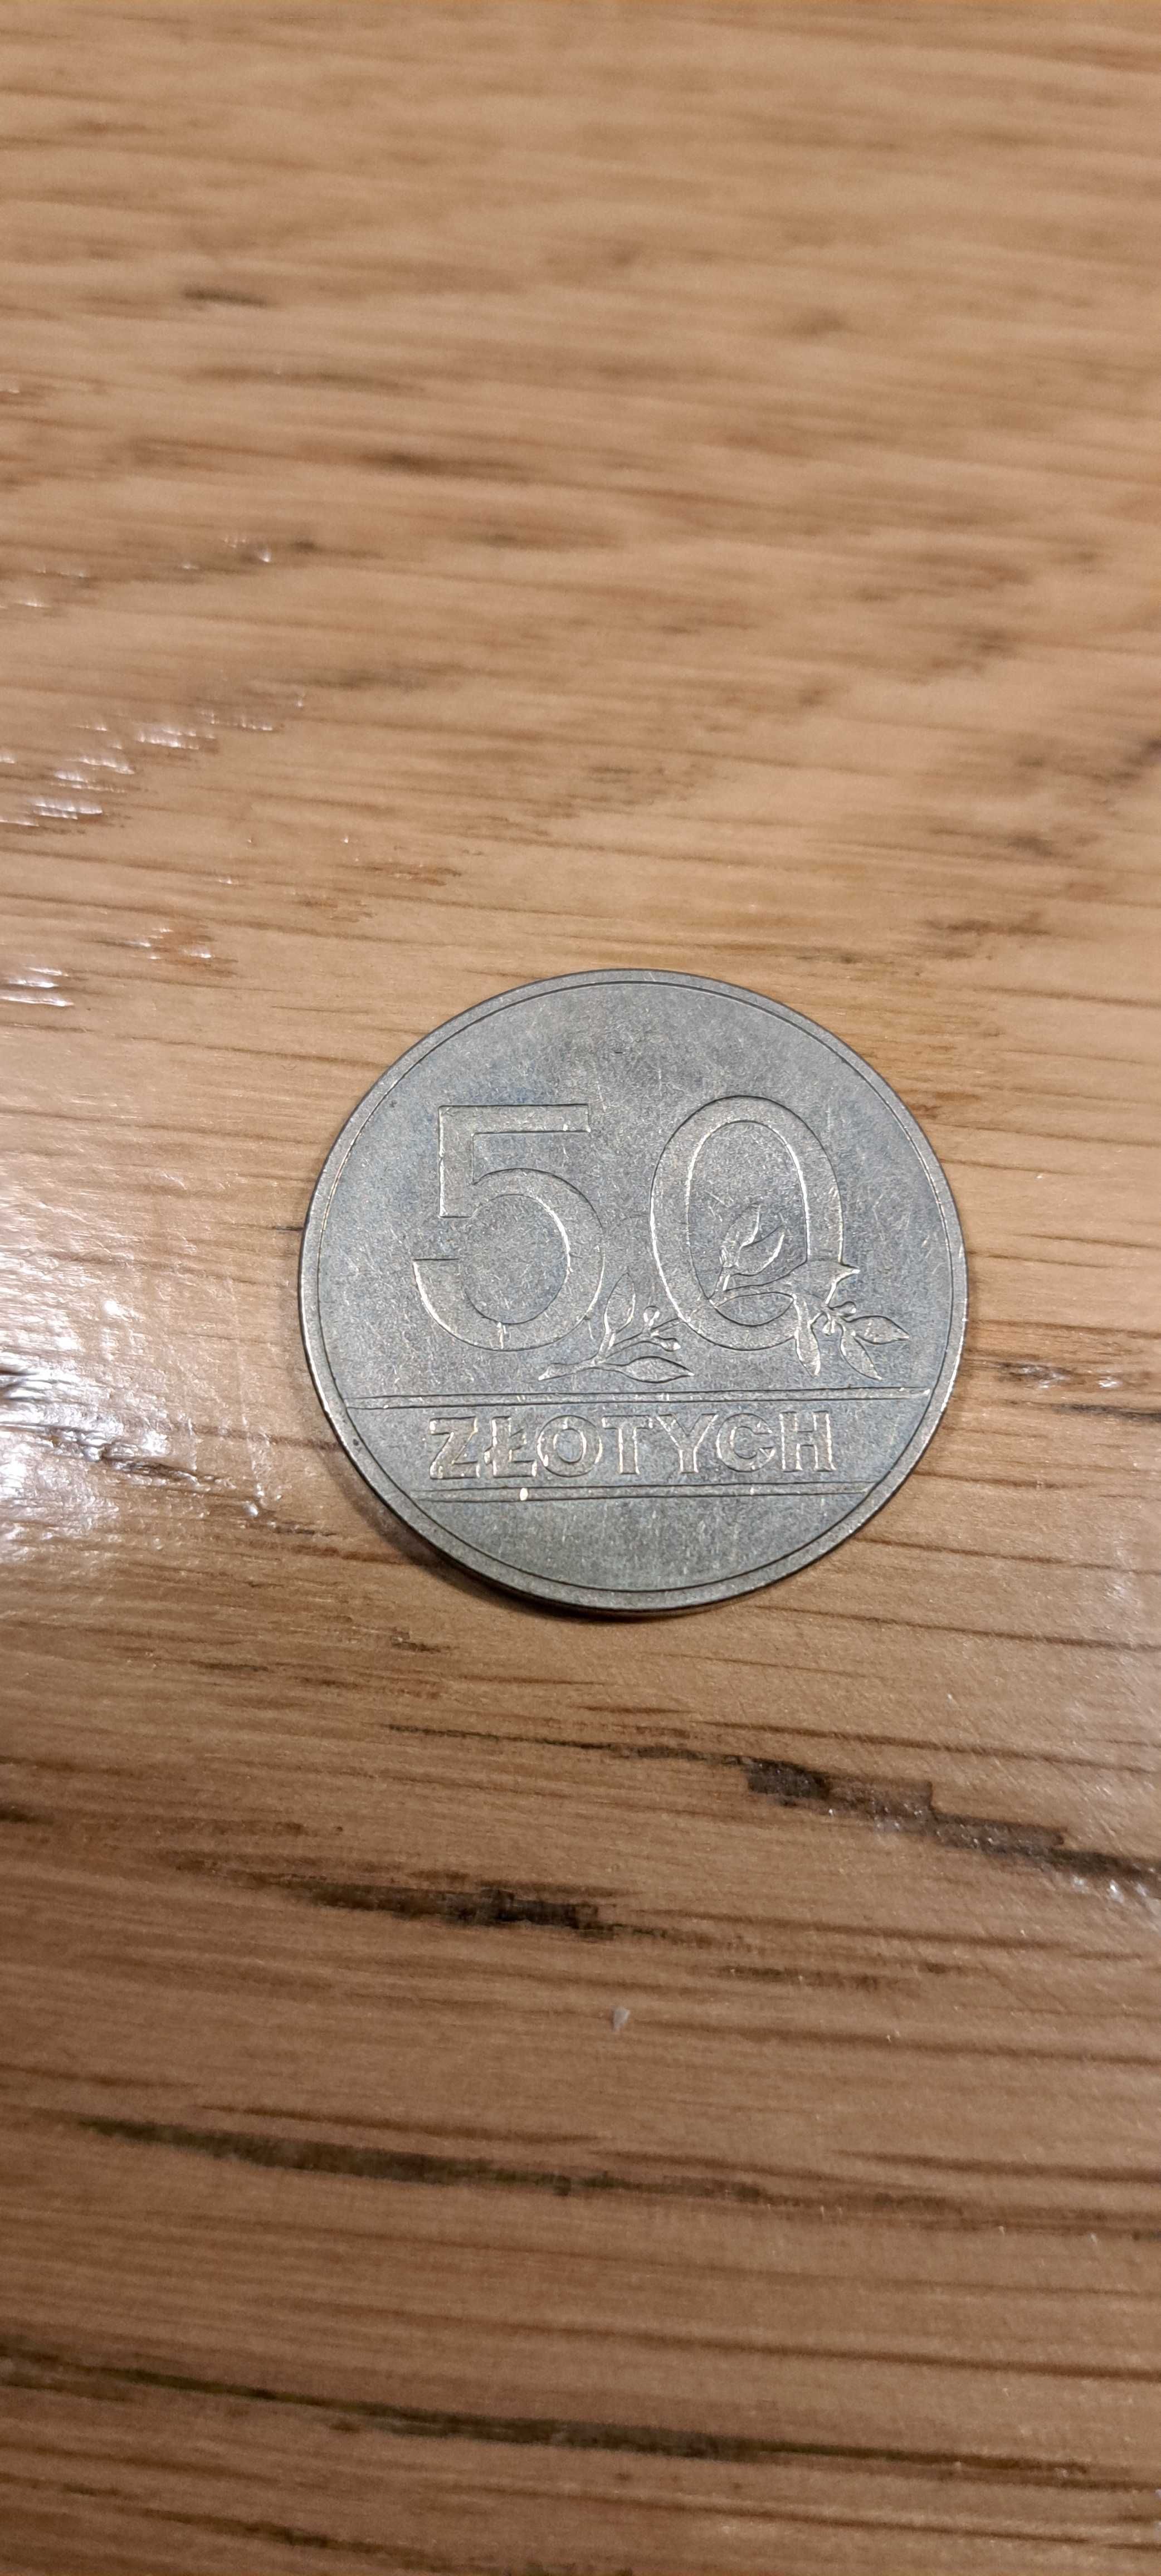 Moneta 50zl 1990r